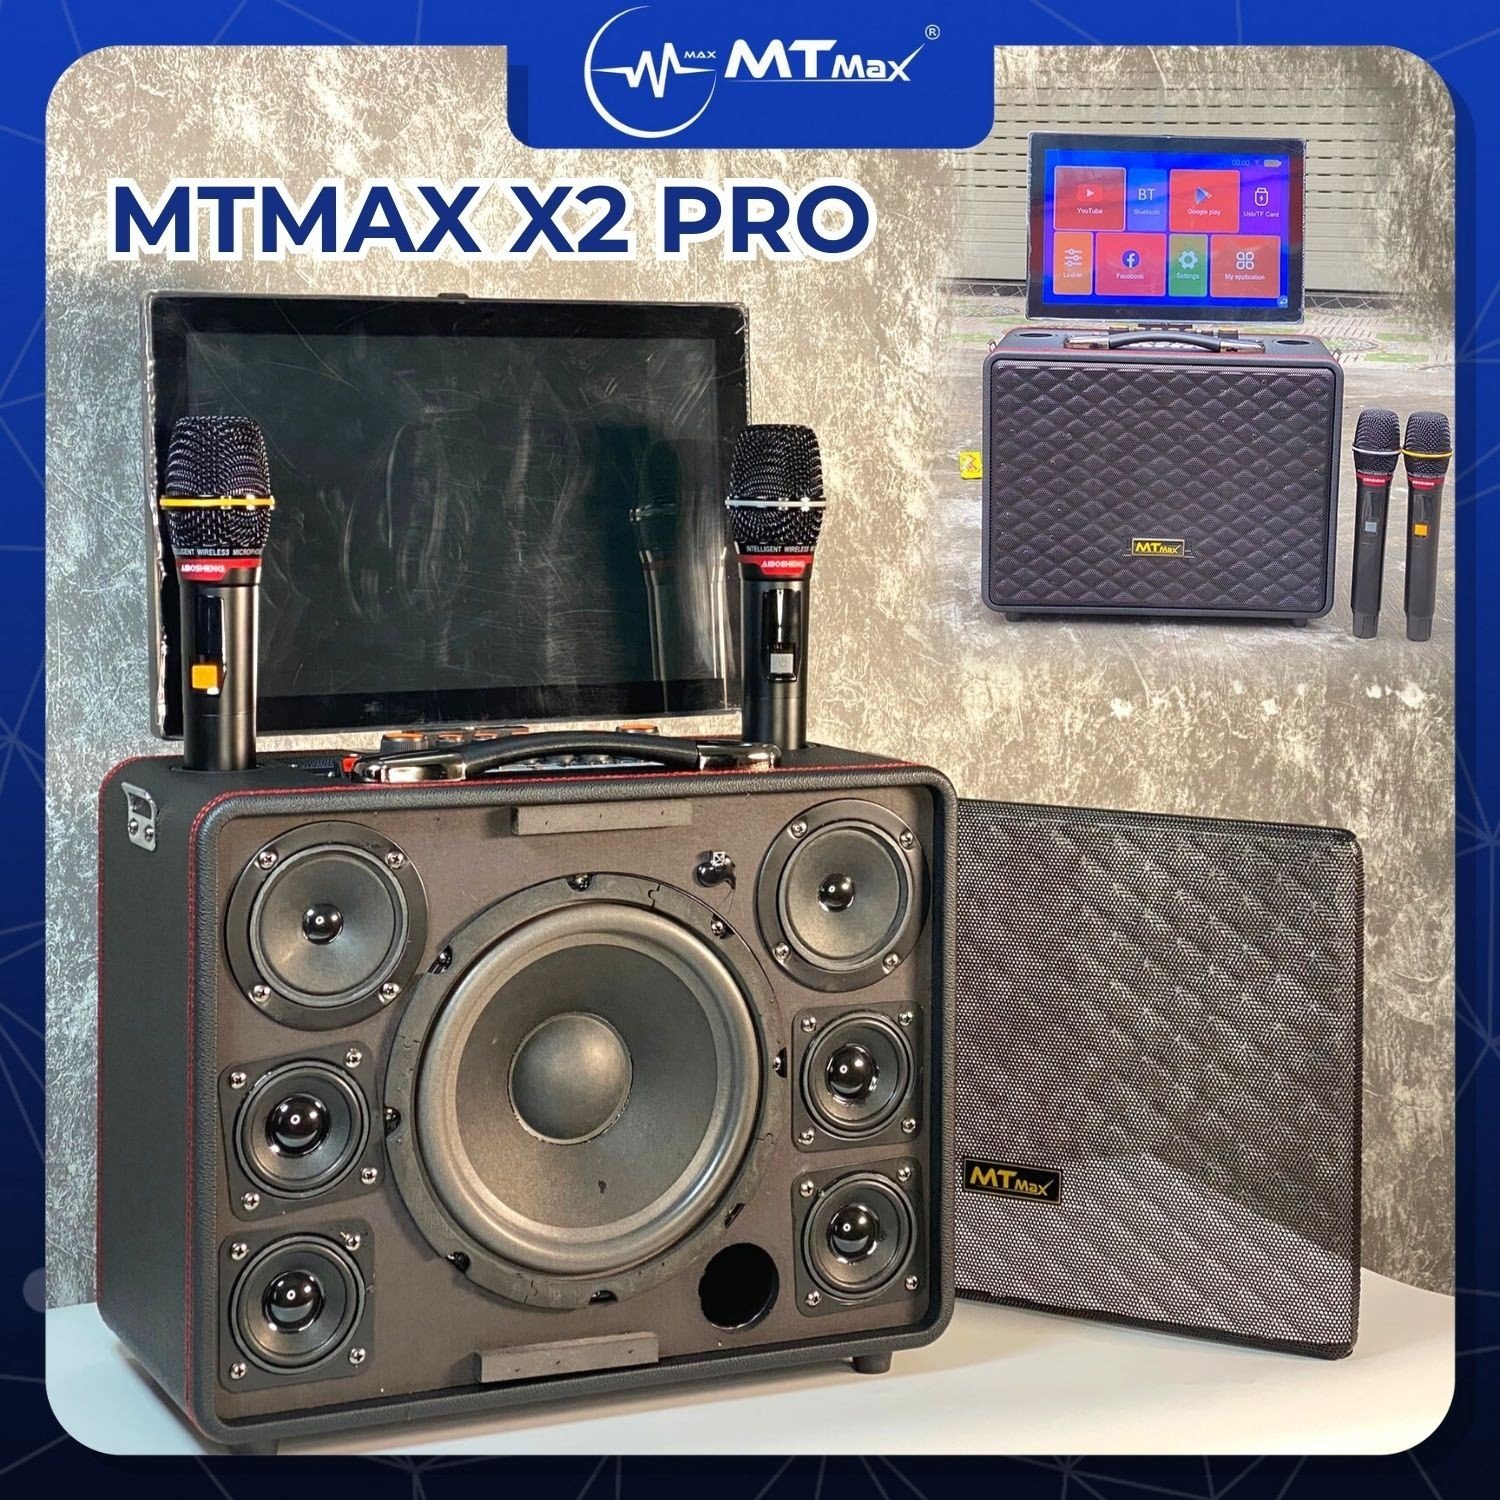 Loa Màn Hình MTMAX X2 PRO - 7 Đường Tiếng Karaoke Cùng Màn Hình Android Hiện Đại, Đẳng Cấp Và Bền Bỉ Với Thùng Chất Liệu Gỗ Bọc Da Và Lớp Bảo Vệ Bên Ngoài Bằng Lưới Kim Loại Cáp Cứng Màu Đen